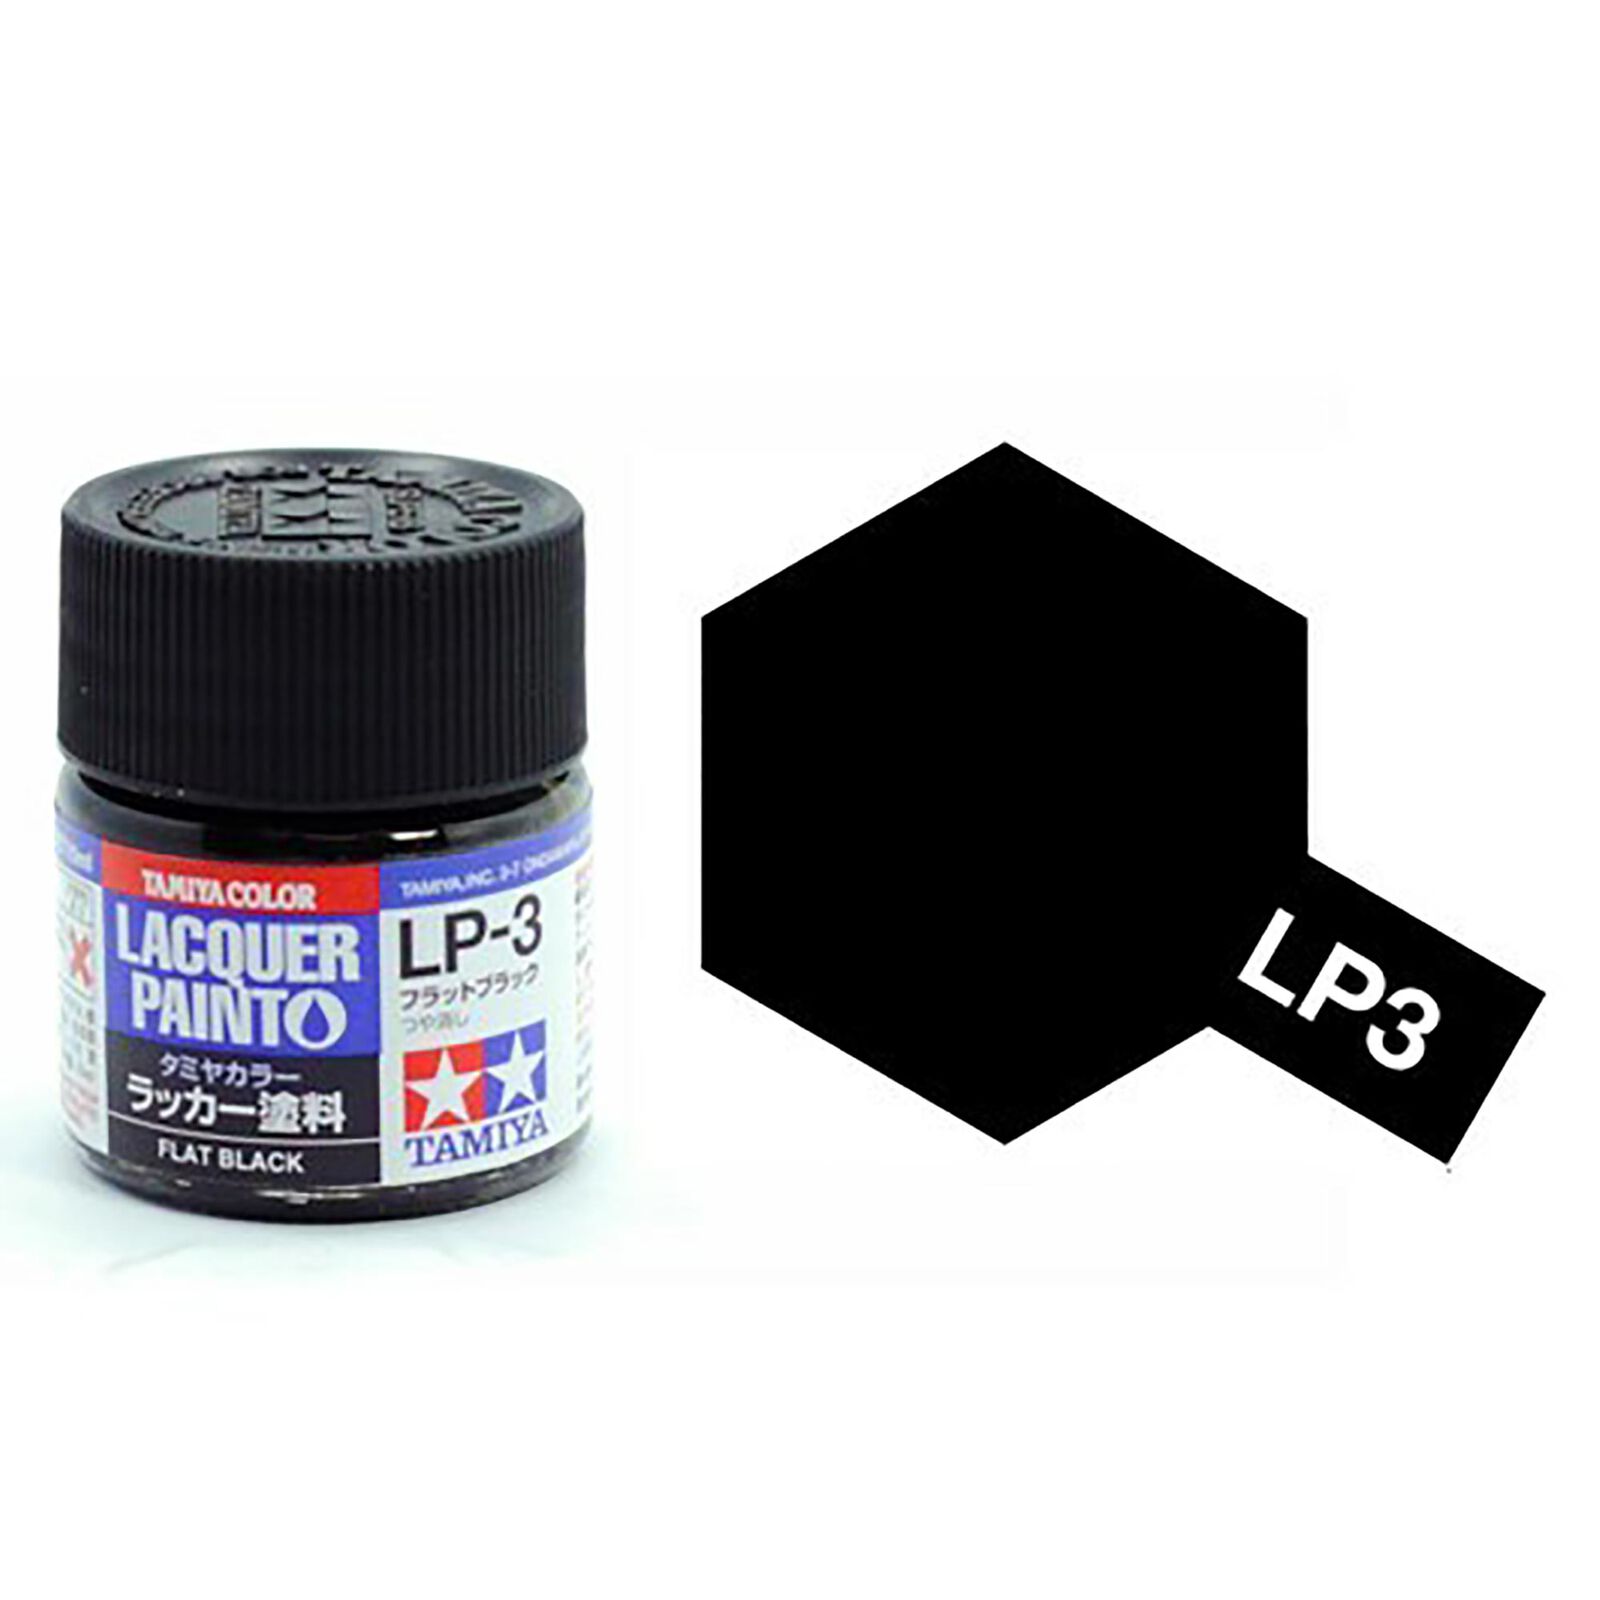 Lacquer Paint, LP-3 Flat Black, 10 mL